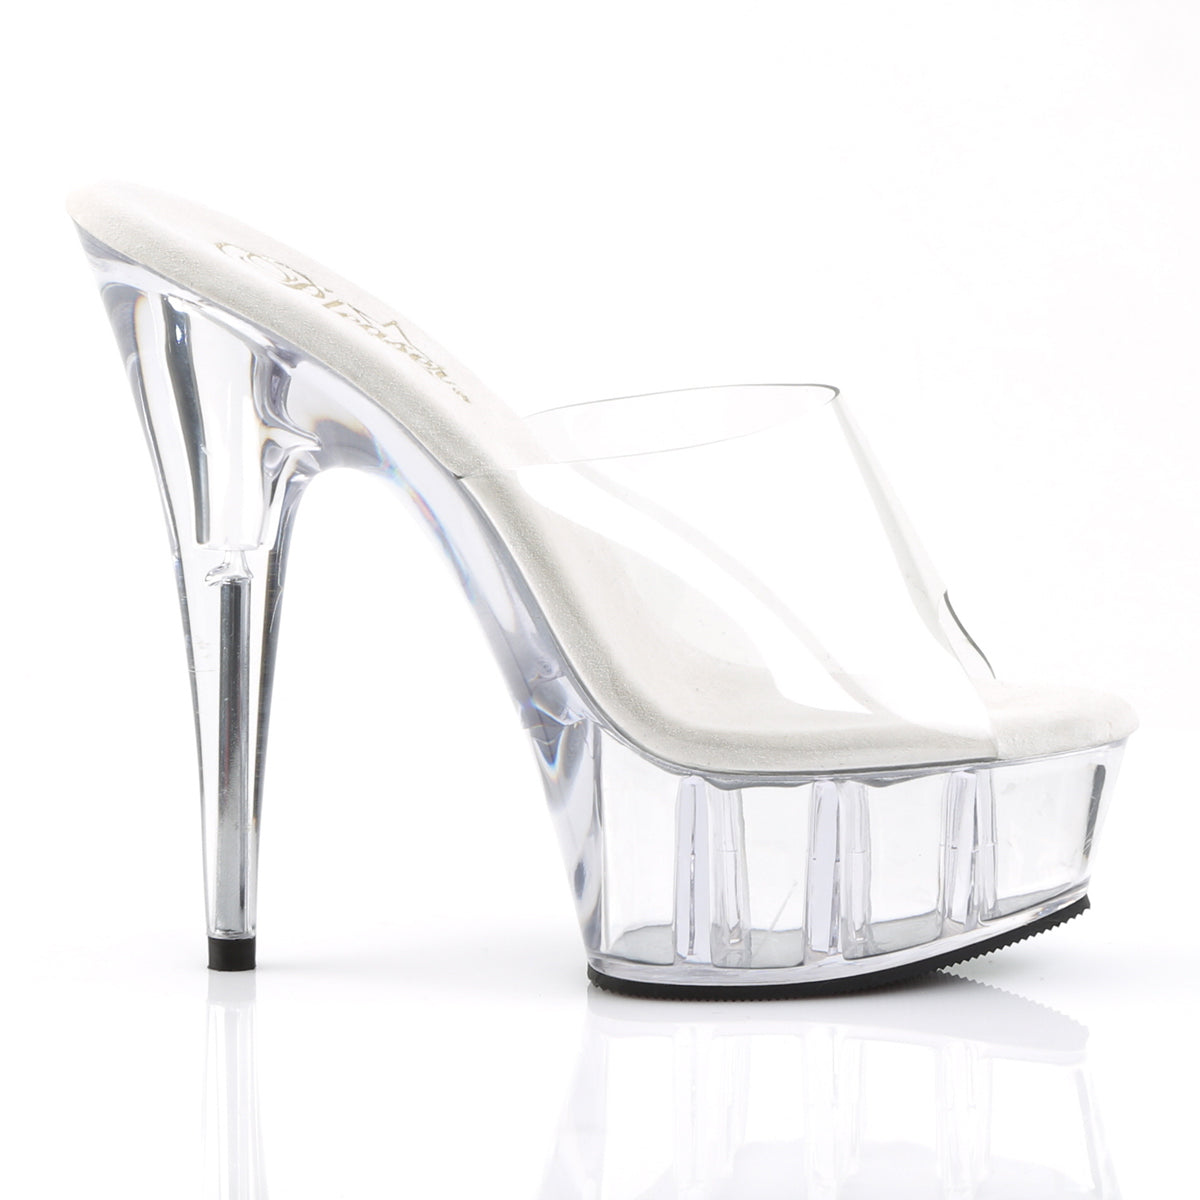 DELIGHT-601 Pleaser Transparent Clear Platform Shoes [Exotic Dance Shoes]